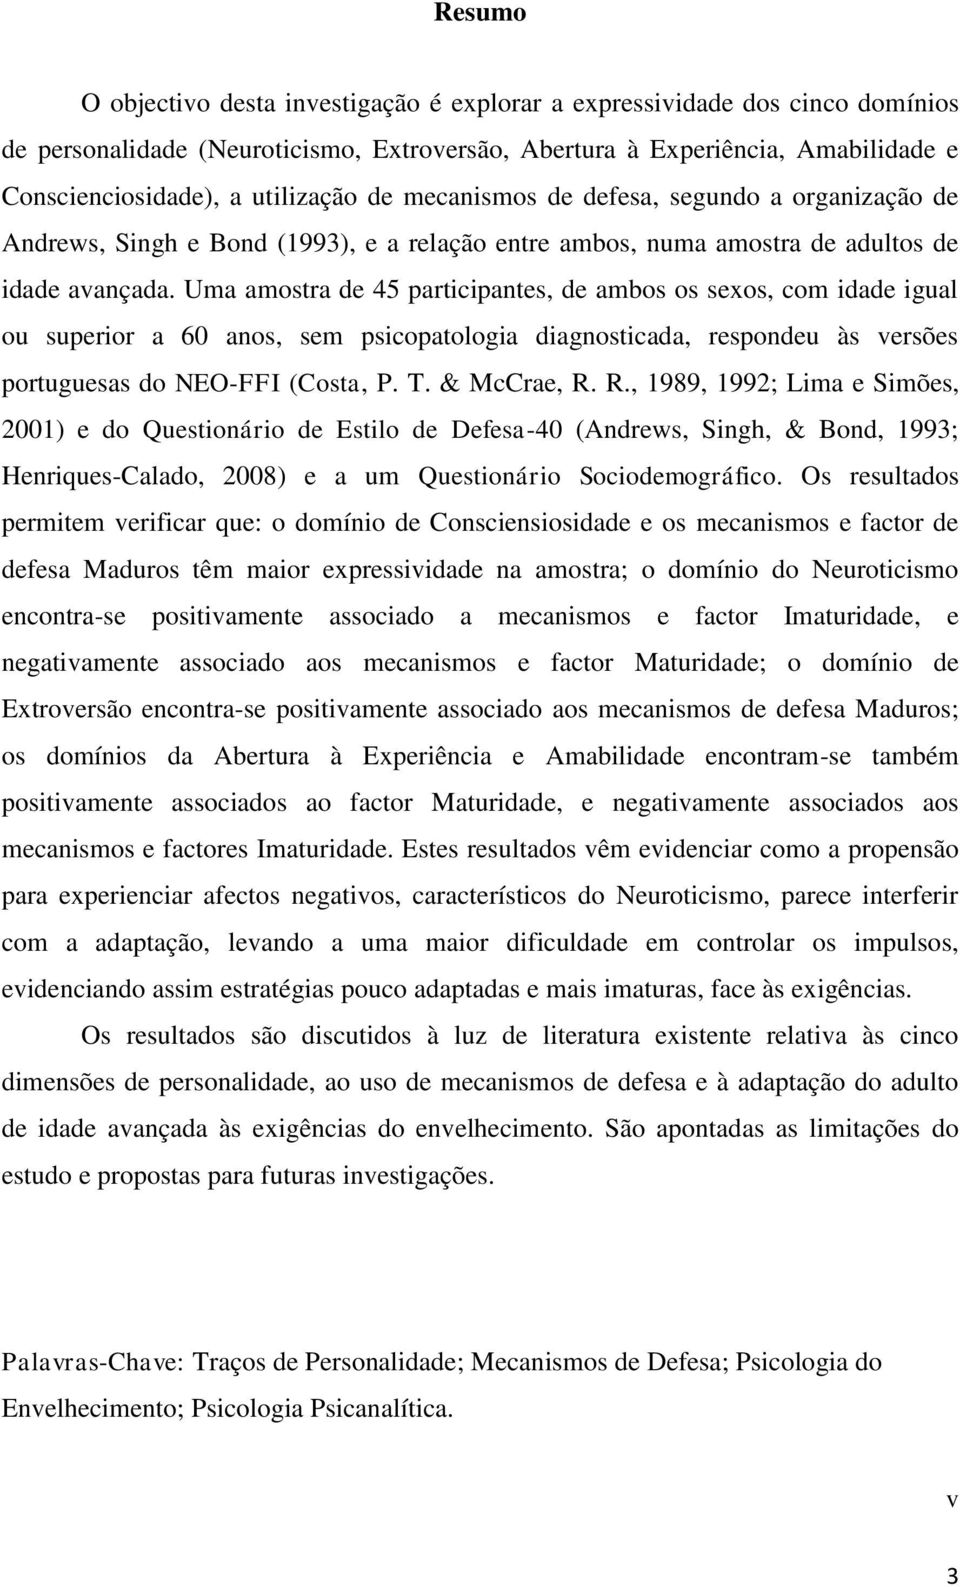 Uma amostra de 45 participantes, de ambos os sexos, com idade igual ou superior a 60 anos, sem psicopatologia diagnosticada, respondeu às versões portuguesas do NEO-FFI (Costa, P. T. & McCrae, R.